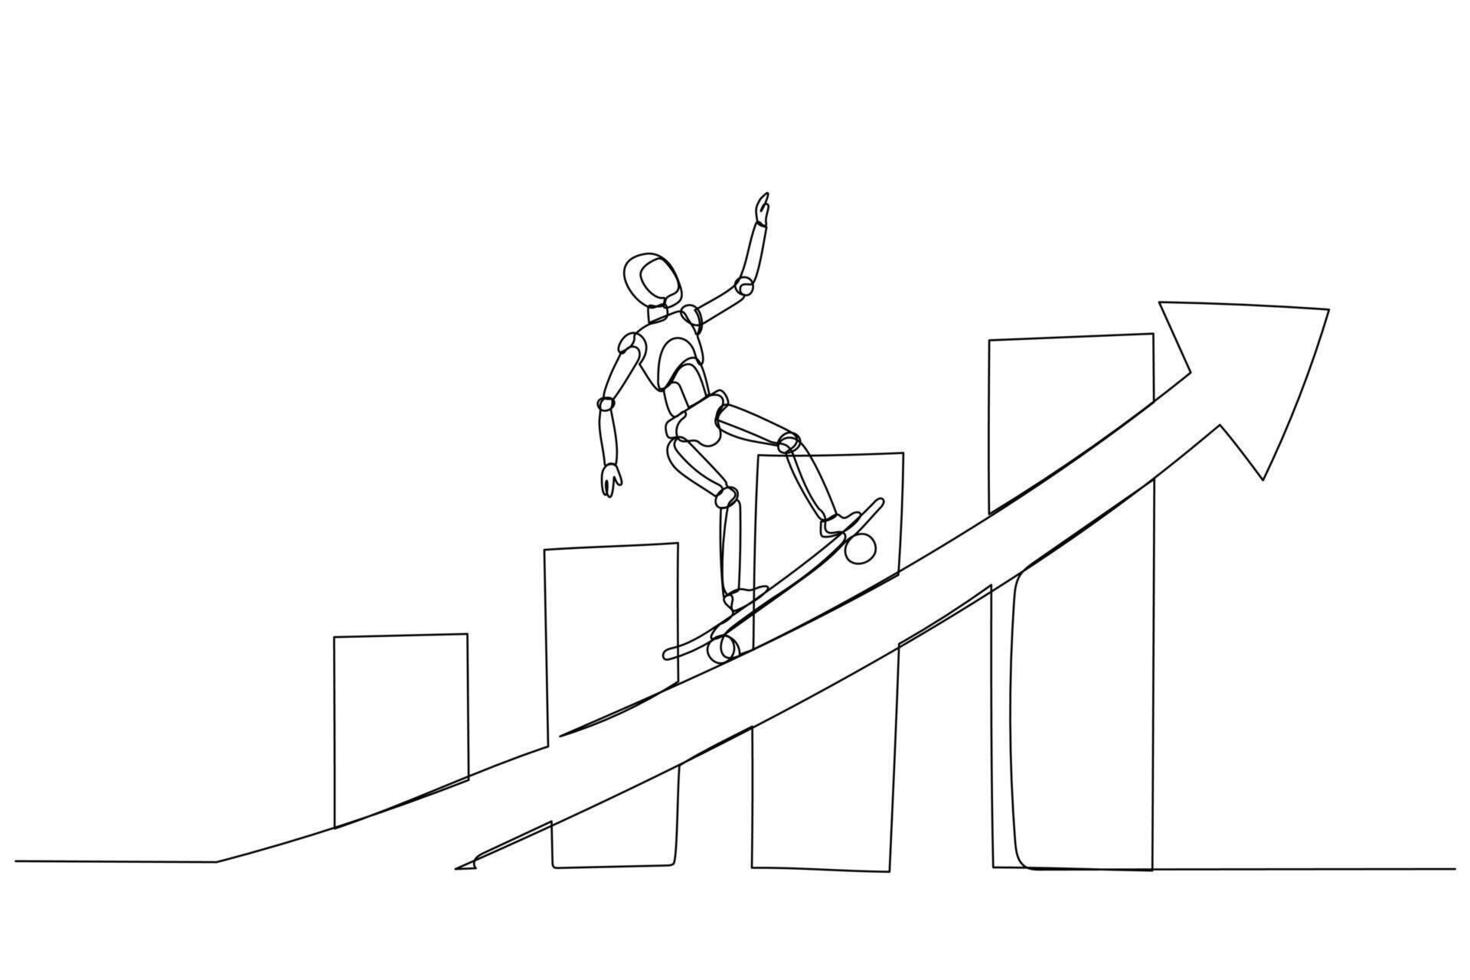 robot andare con lo skateboard su un inclinato freccia Caratteristiche bar grafici di variando altezza. esso simboleggia positivo crescita o miglioramento di attività commerciale o personale sviluppo. vettore